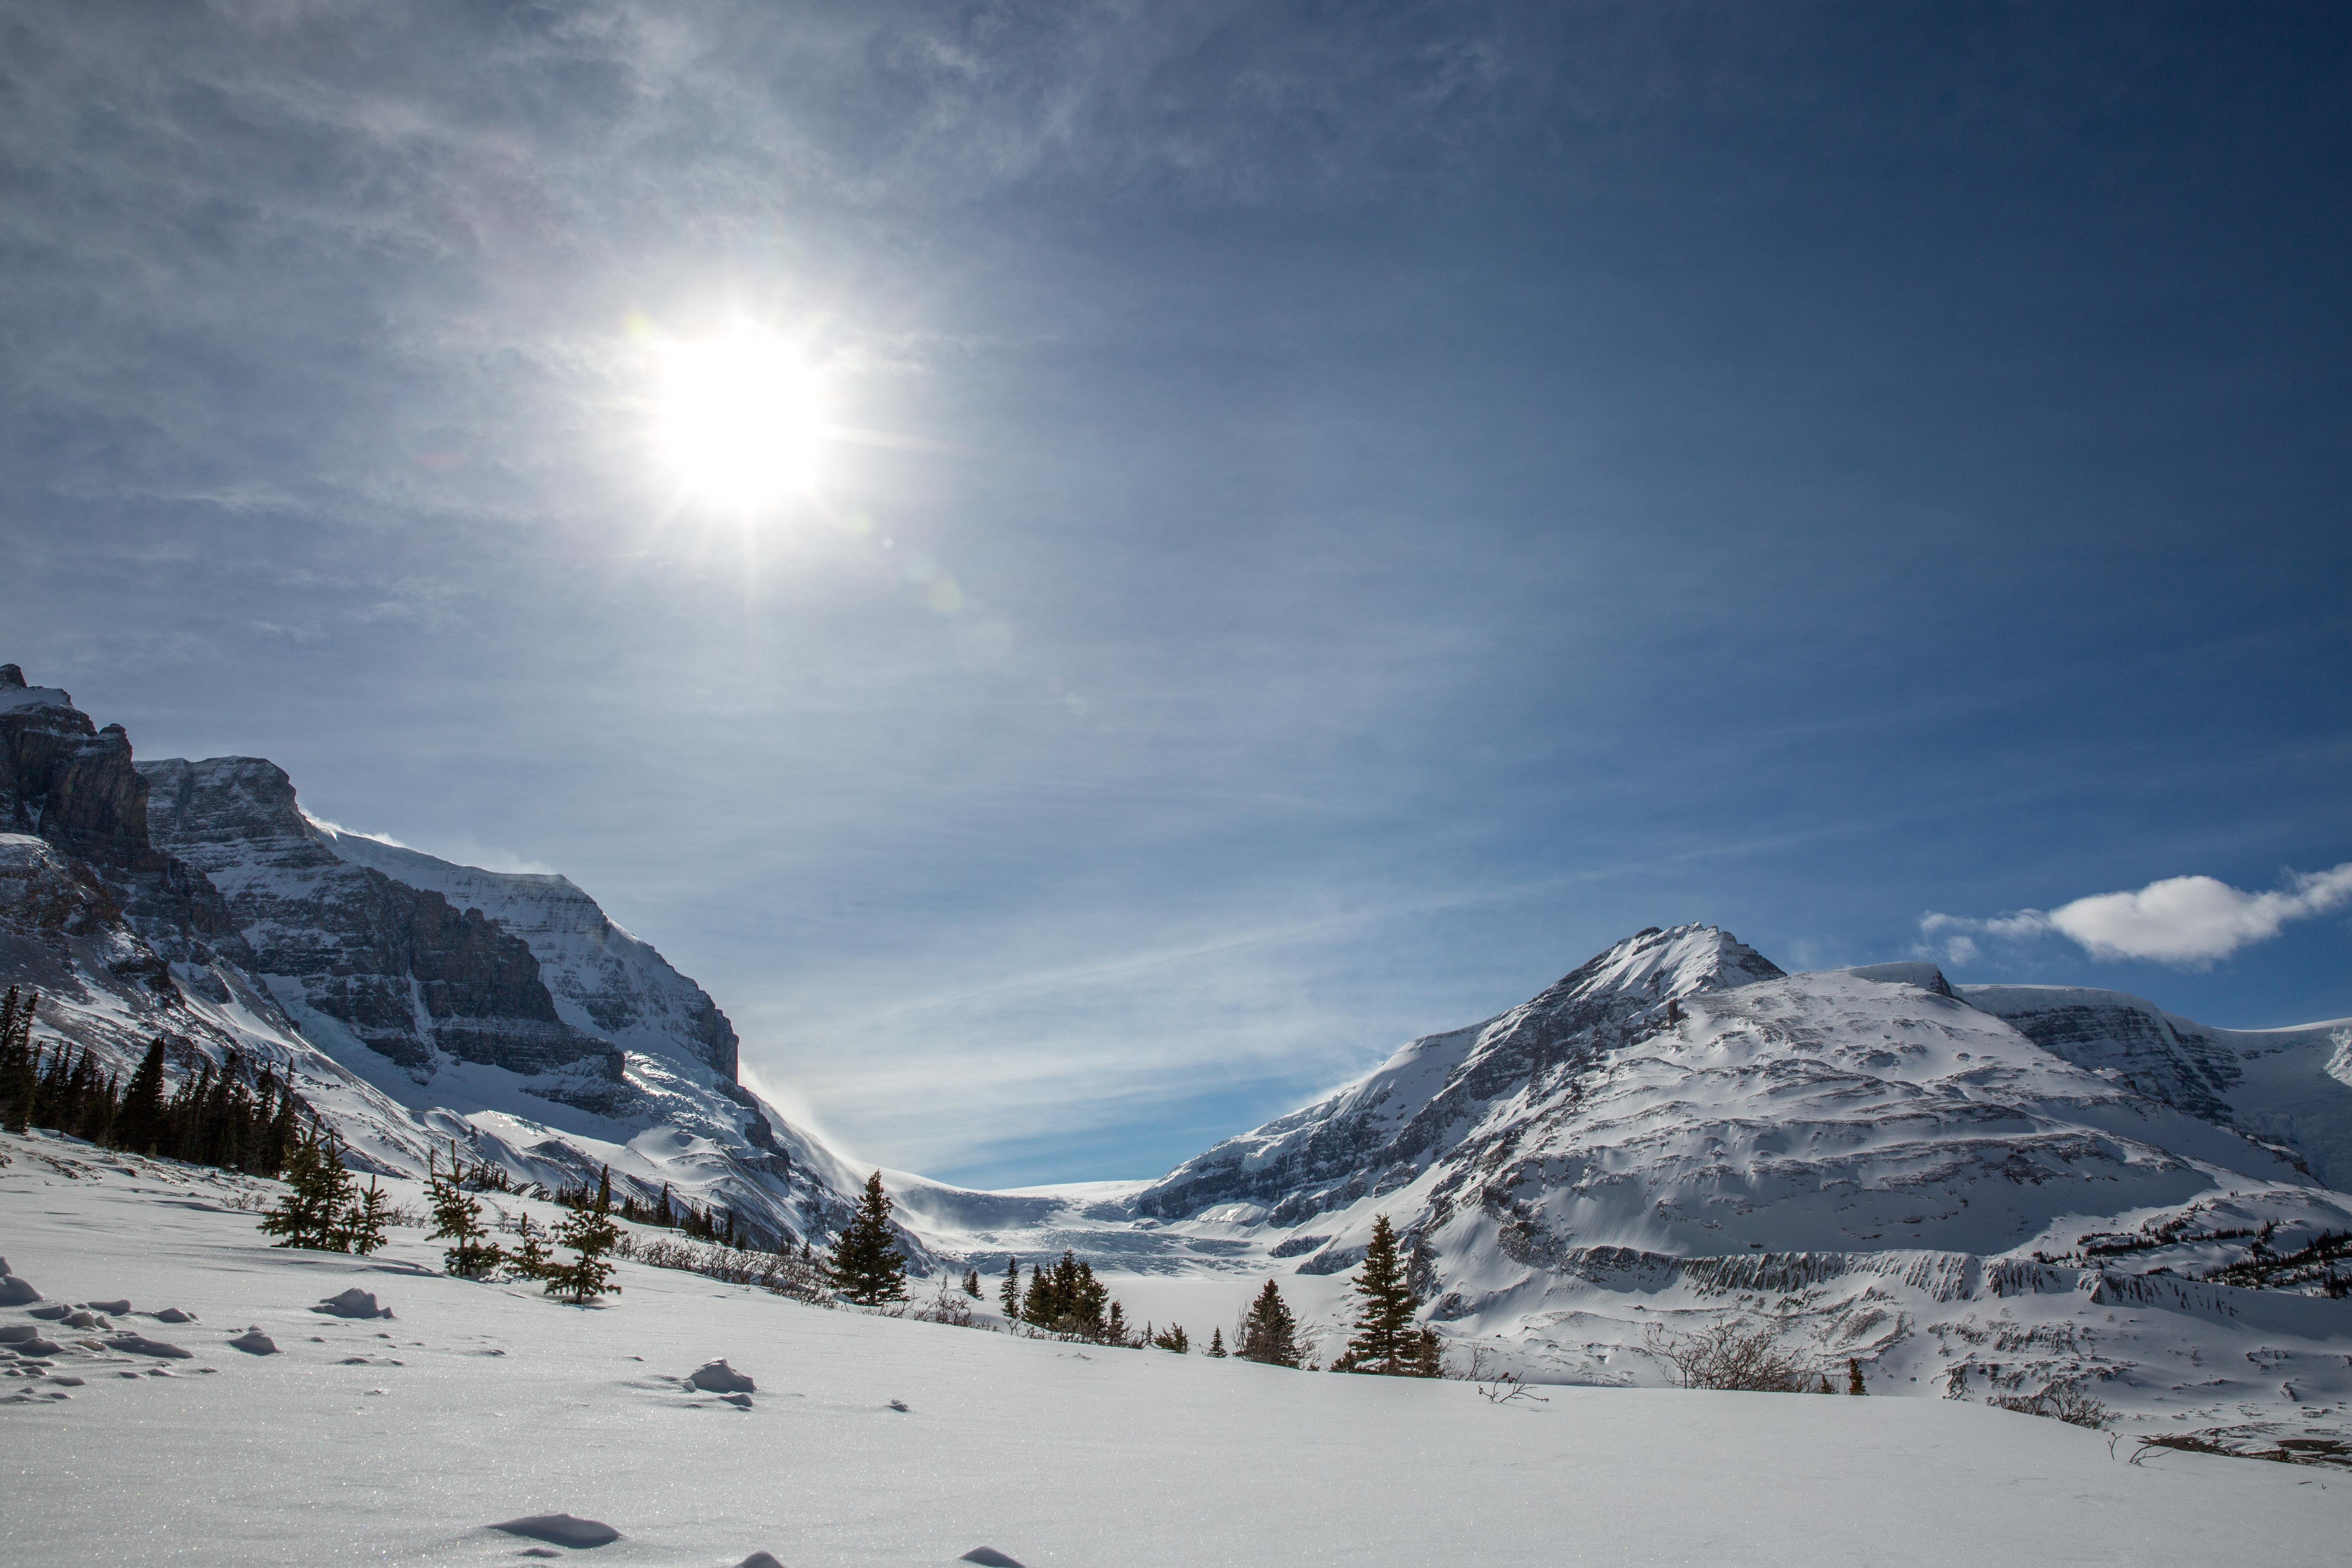 Clumbia Icefields vlakbij het skigebied van Jasper - Marmot Basin, Alberta, Canada